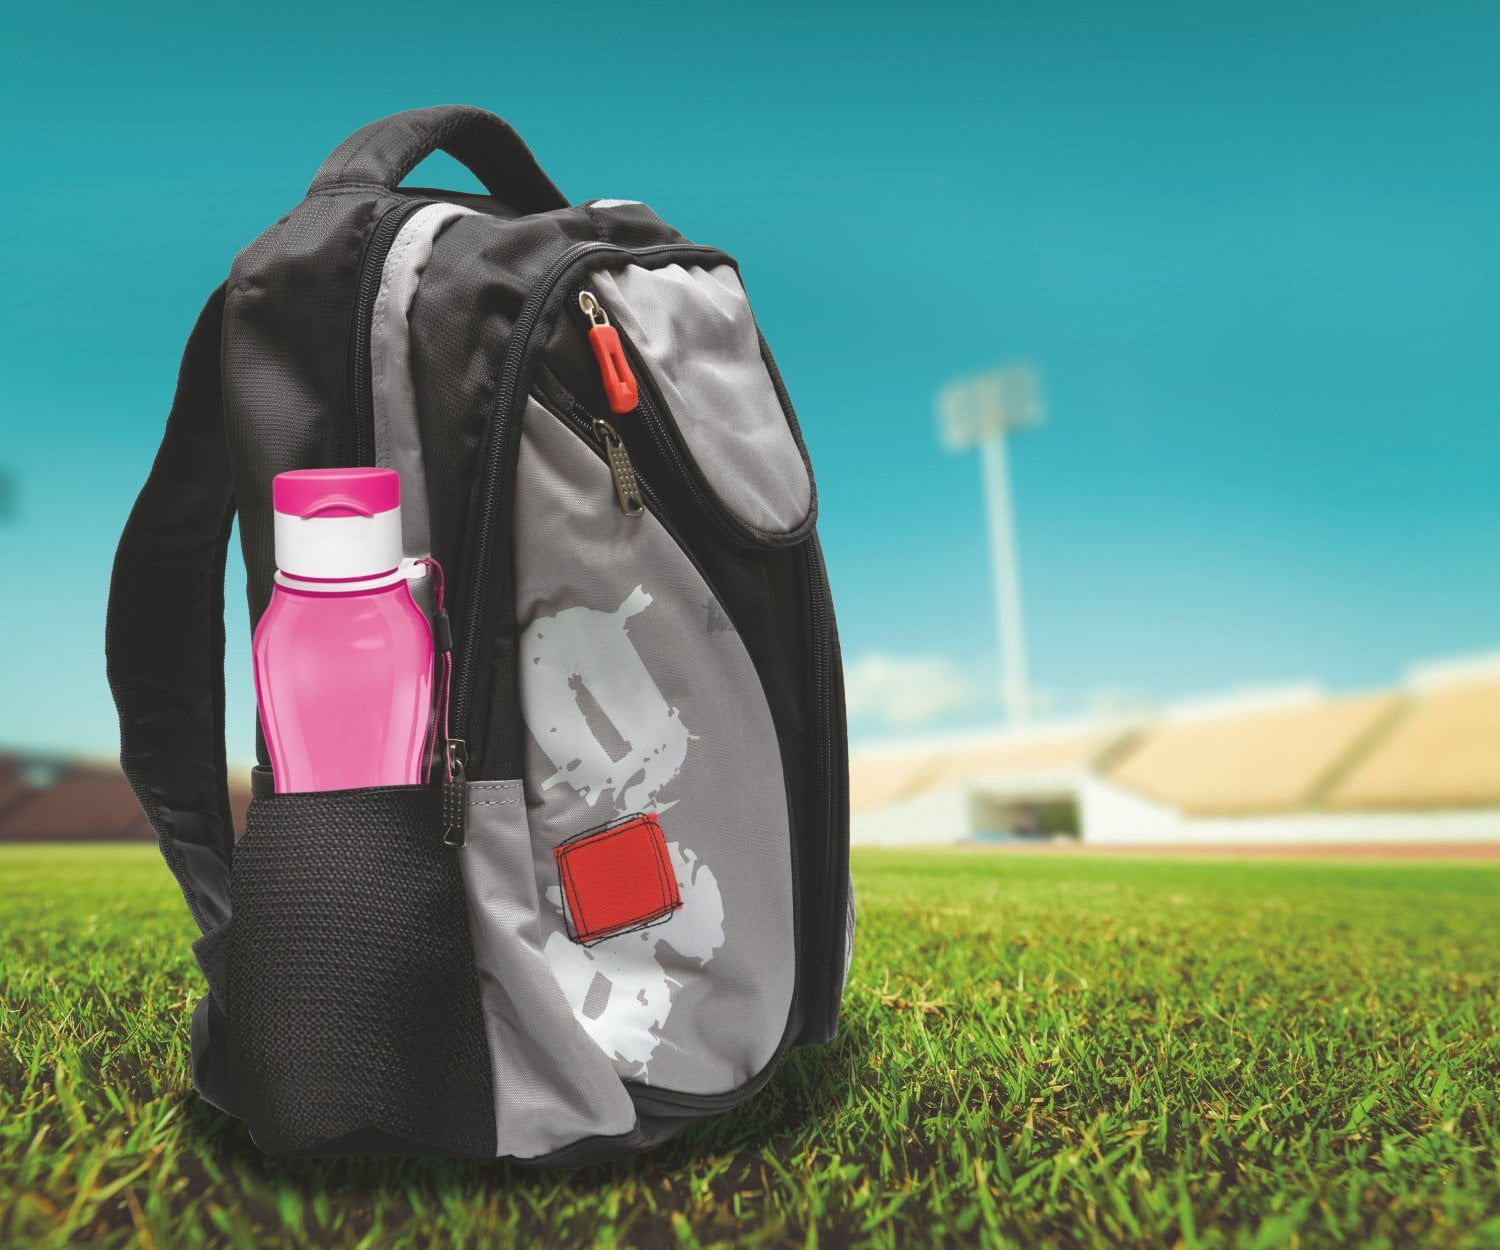 MILTON 16 pack 6 oz Kids Water Bottle for School Leak Free Flip Lid-  Portable Small Sports Water Bot…See more MILTON 16 pack 6 oz Kids Water  Bottle